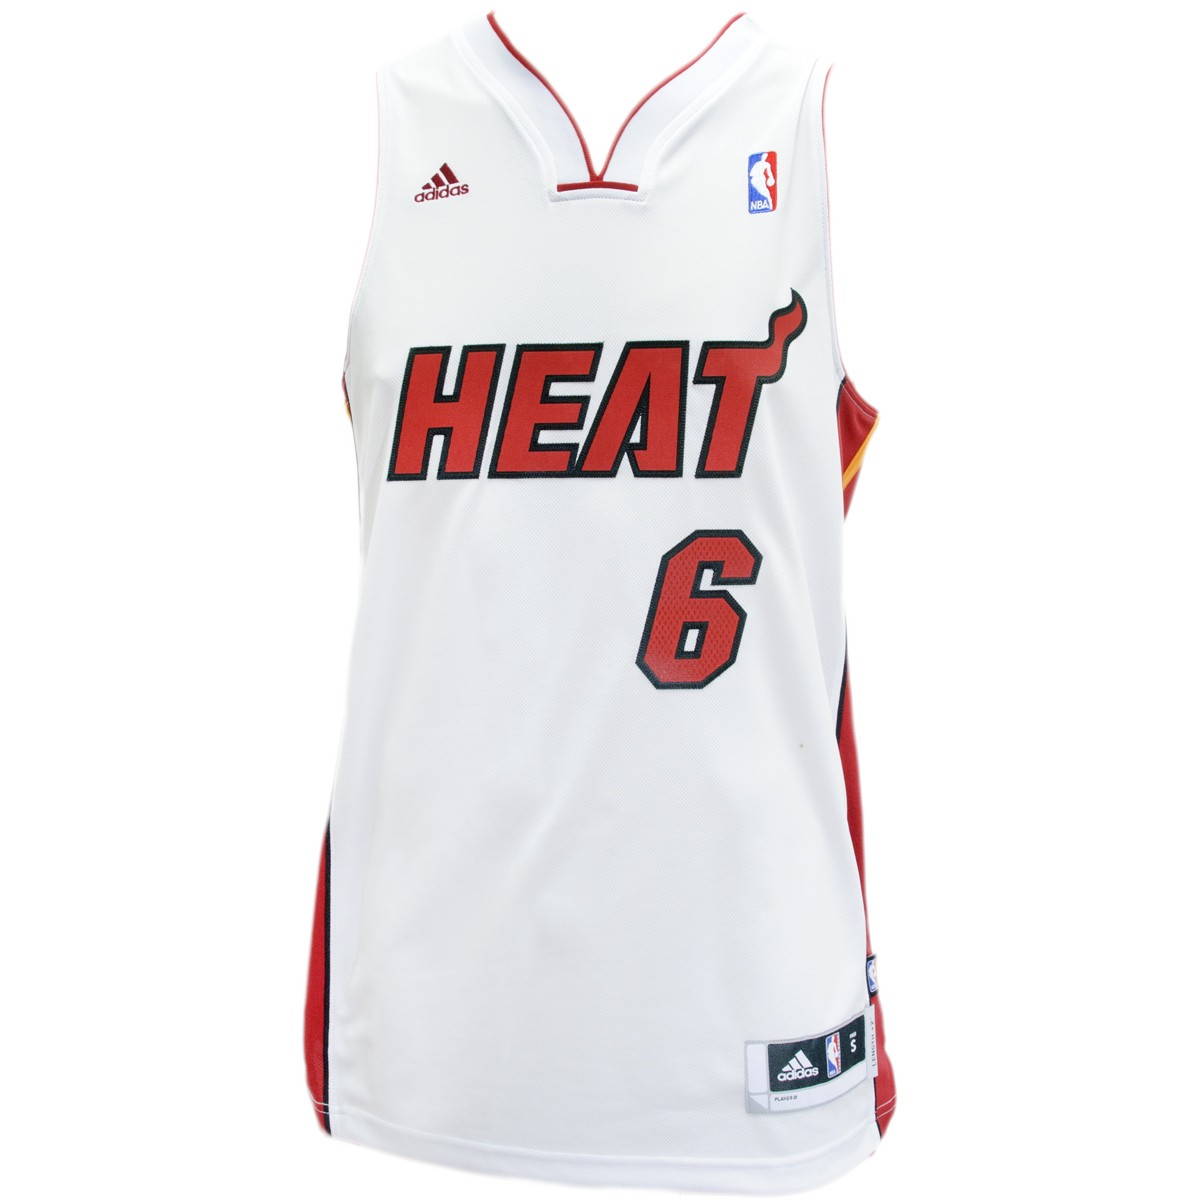 NBA HEAT 6 レブロンジェームズ ユニフォーム タグ付き adidas